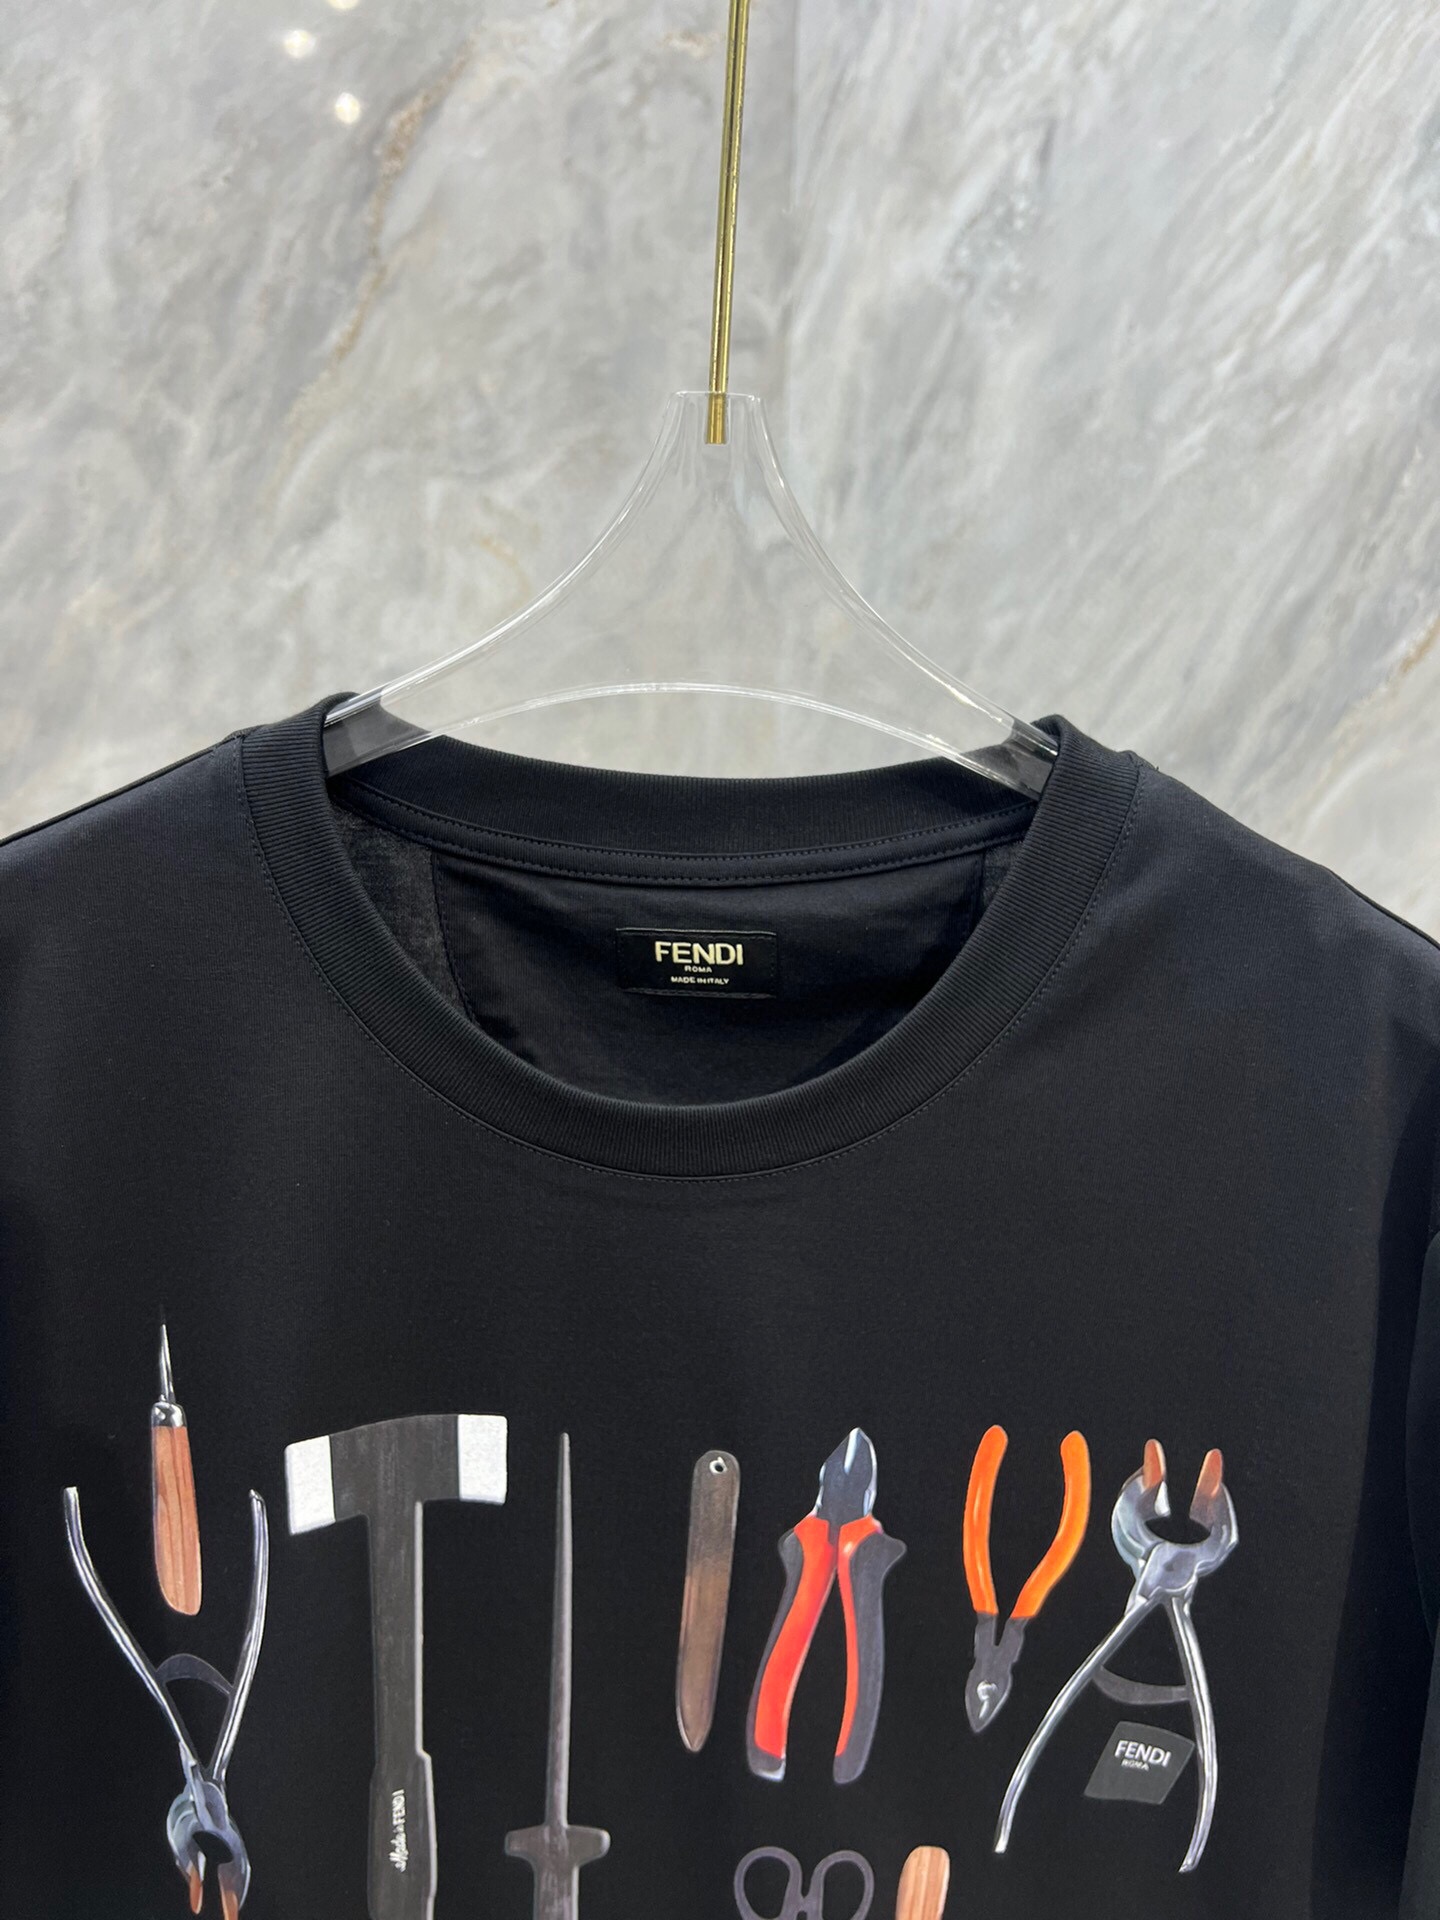 Fendi/芬迪24ss男装饰数码印花工具图案圆领短袖T恤正面饰有FENDI工具图案描绘FENDI工匠所